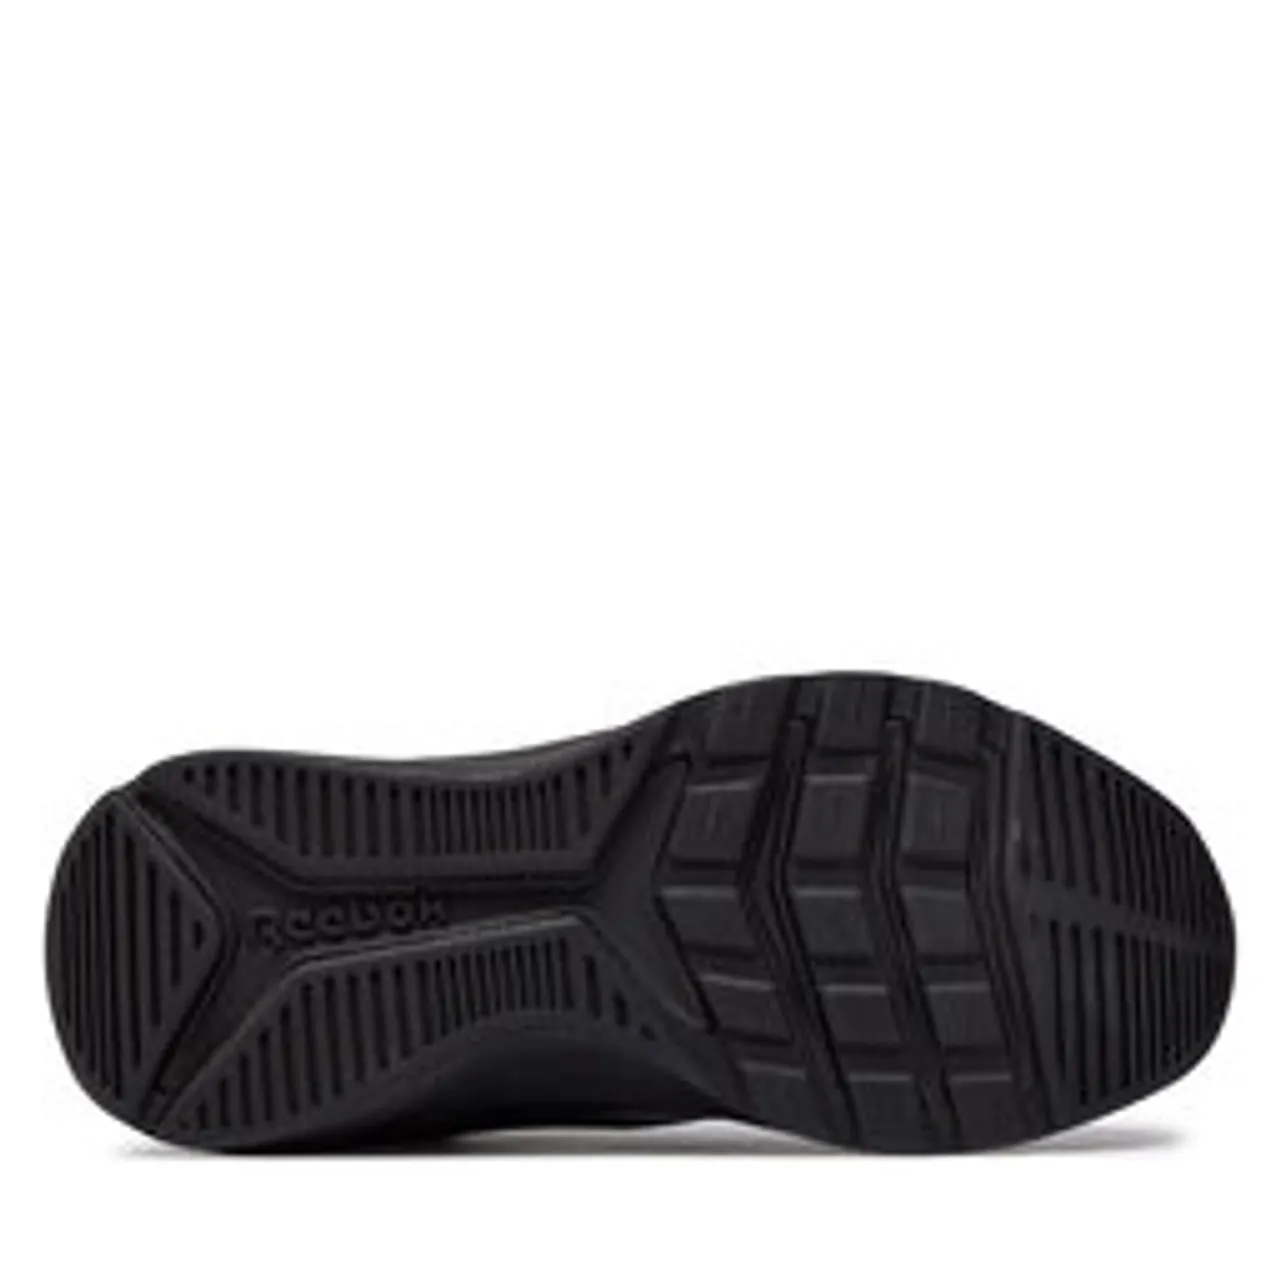 Schuhe Reebok Xt Sprinter 2.0 Al H02853 Black/Black/Black